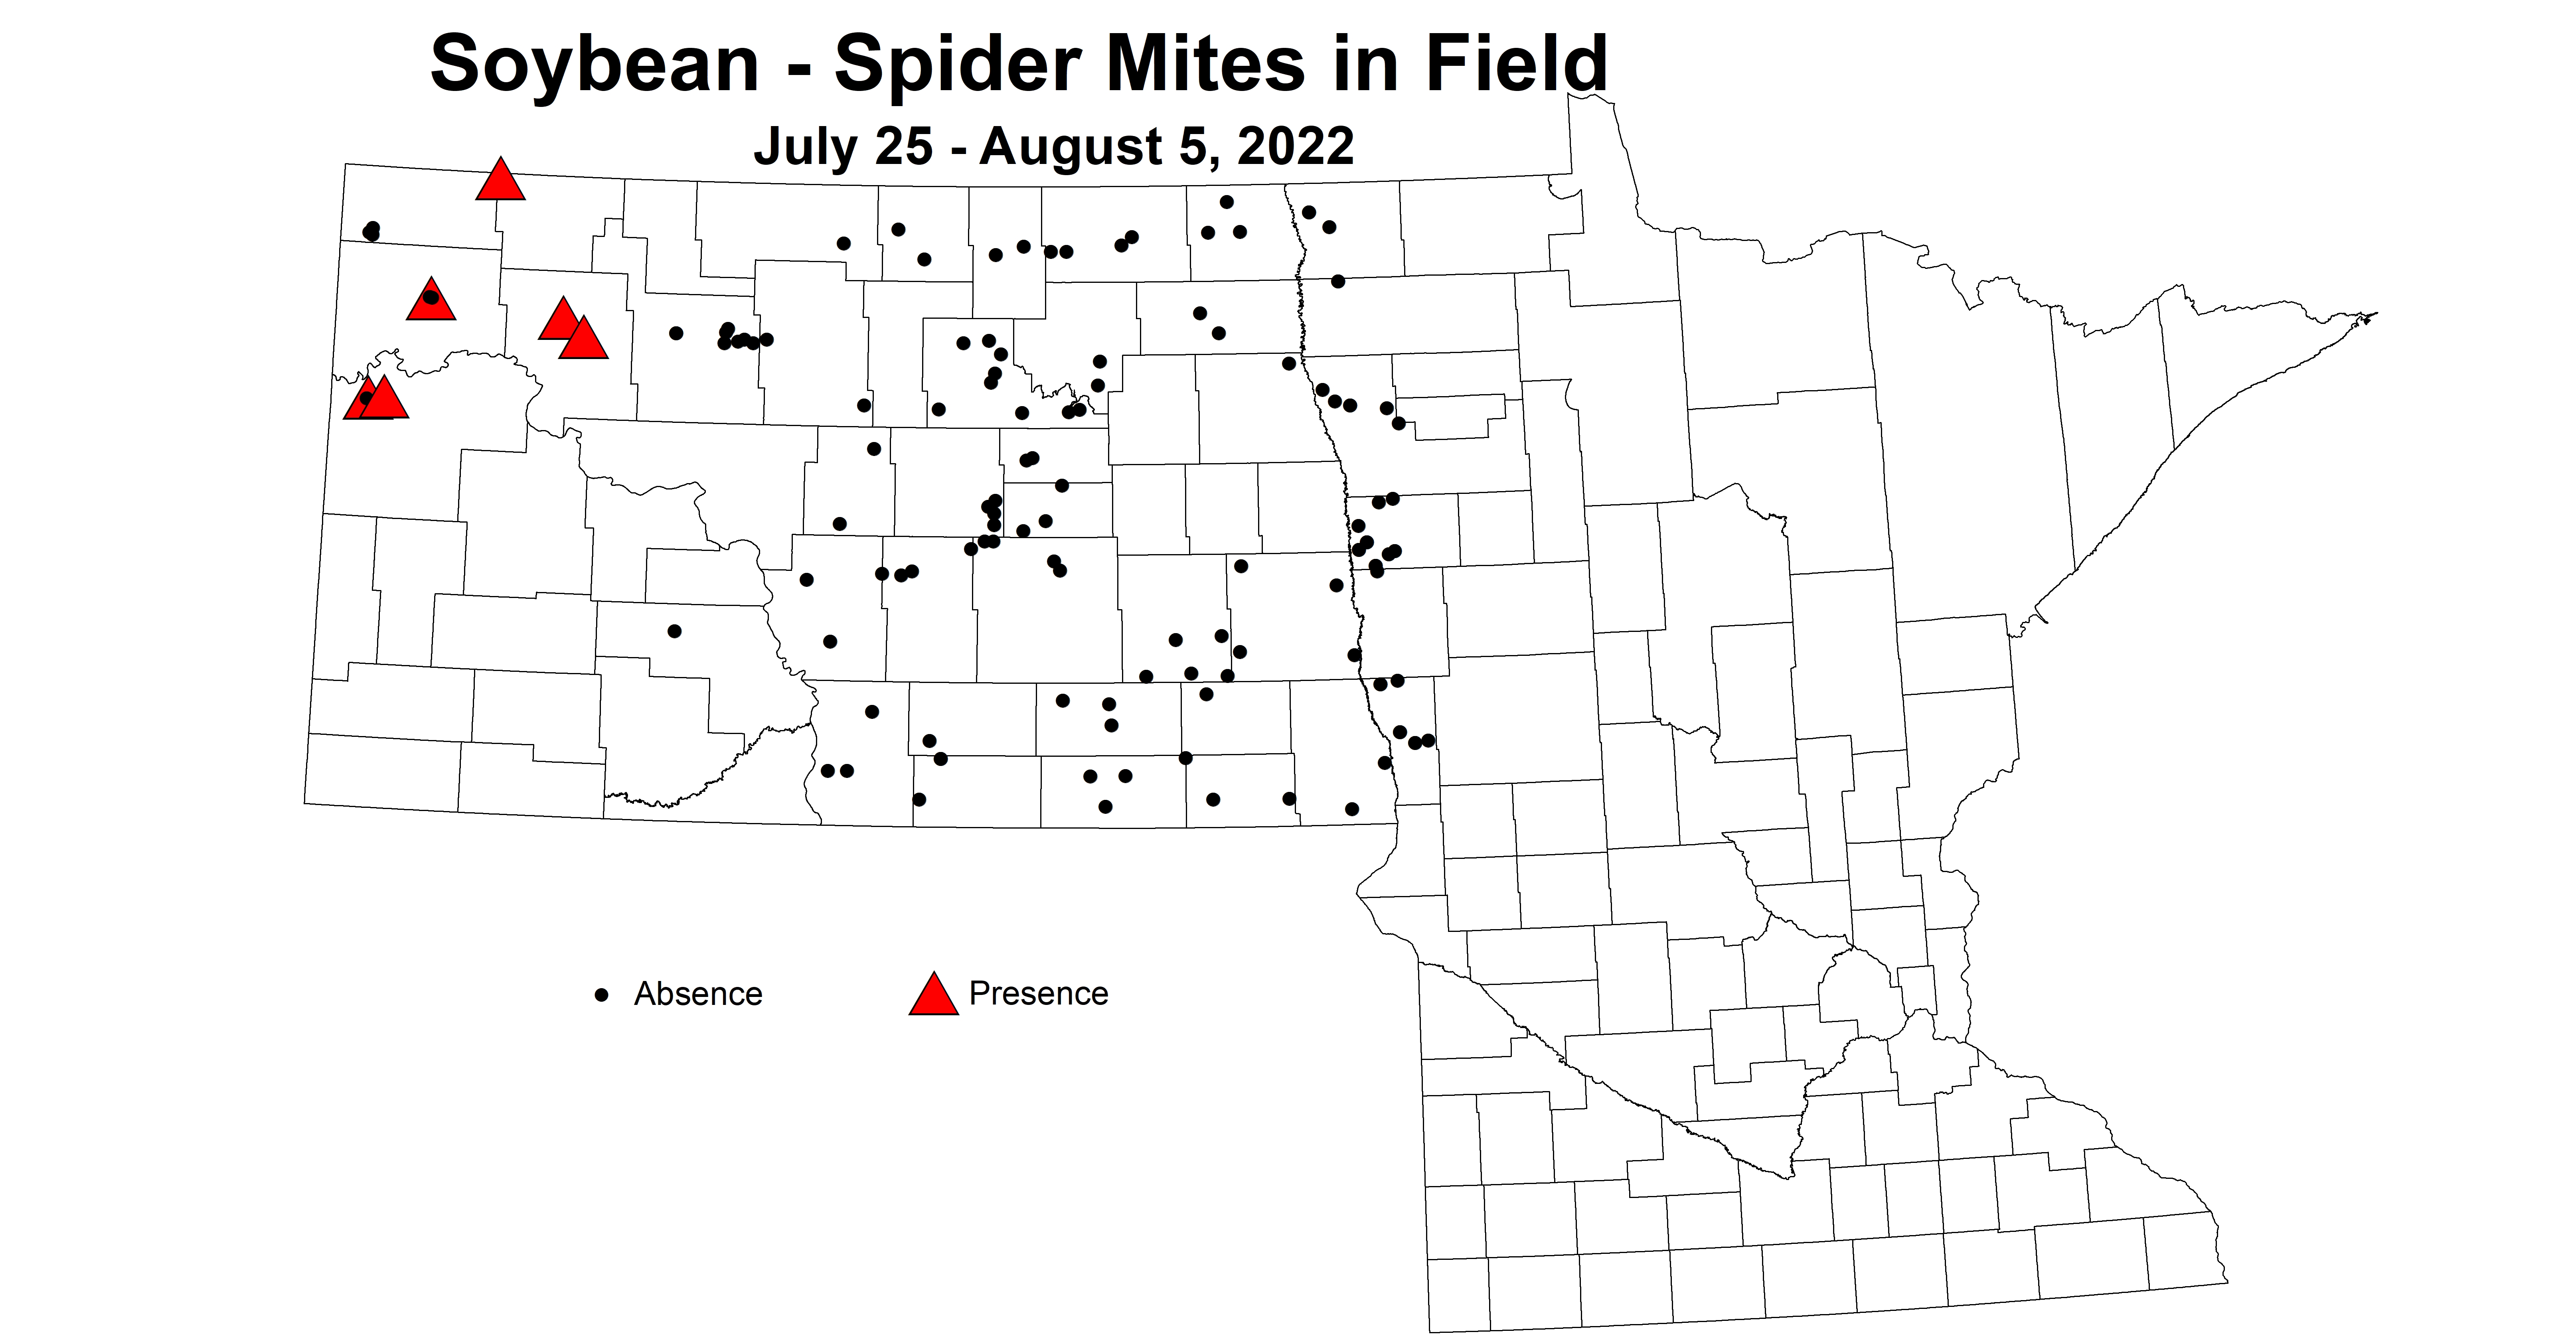 soybean spider mites in field 2022 7.25-8.5.jpg